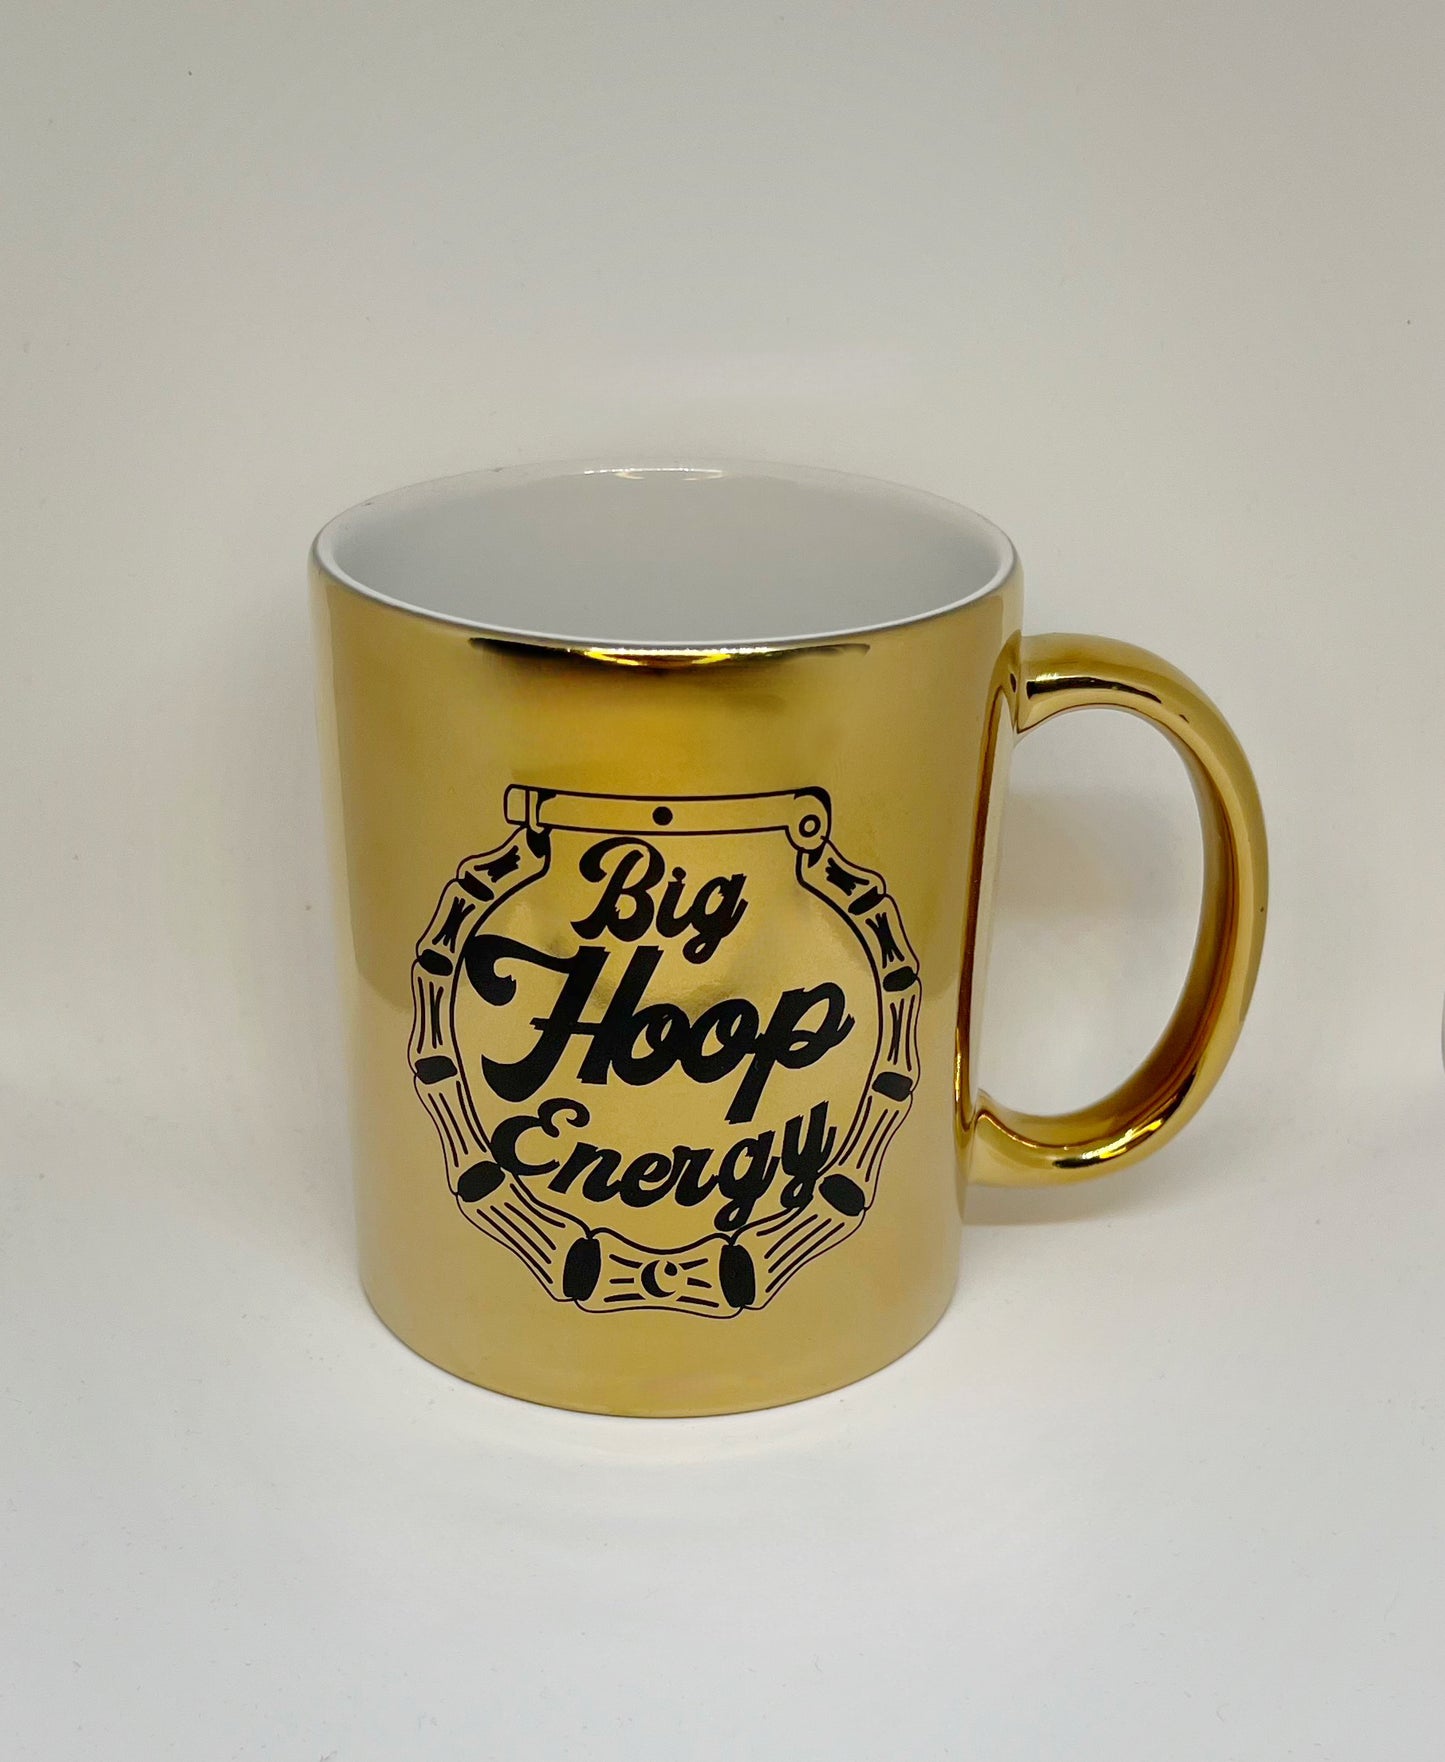 Big Hoop Energy Mug